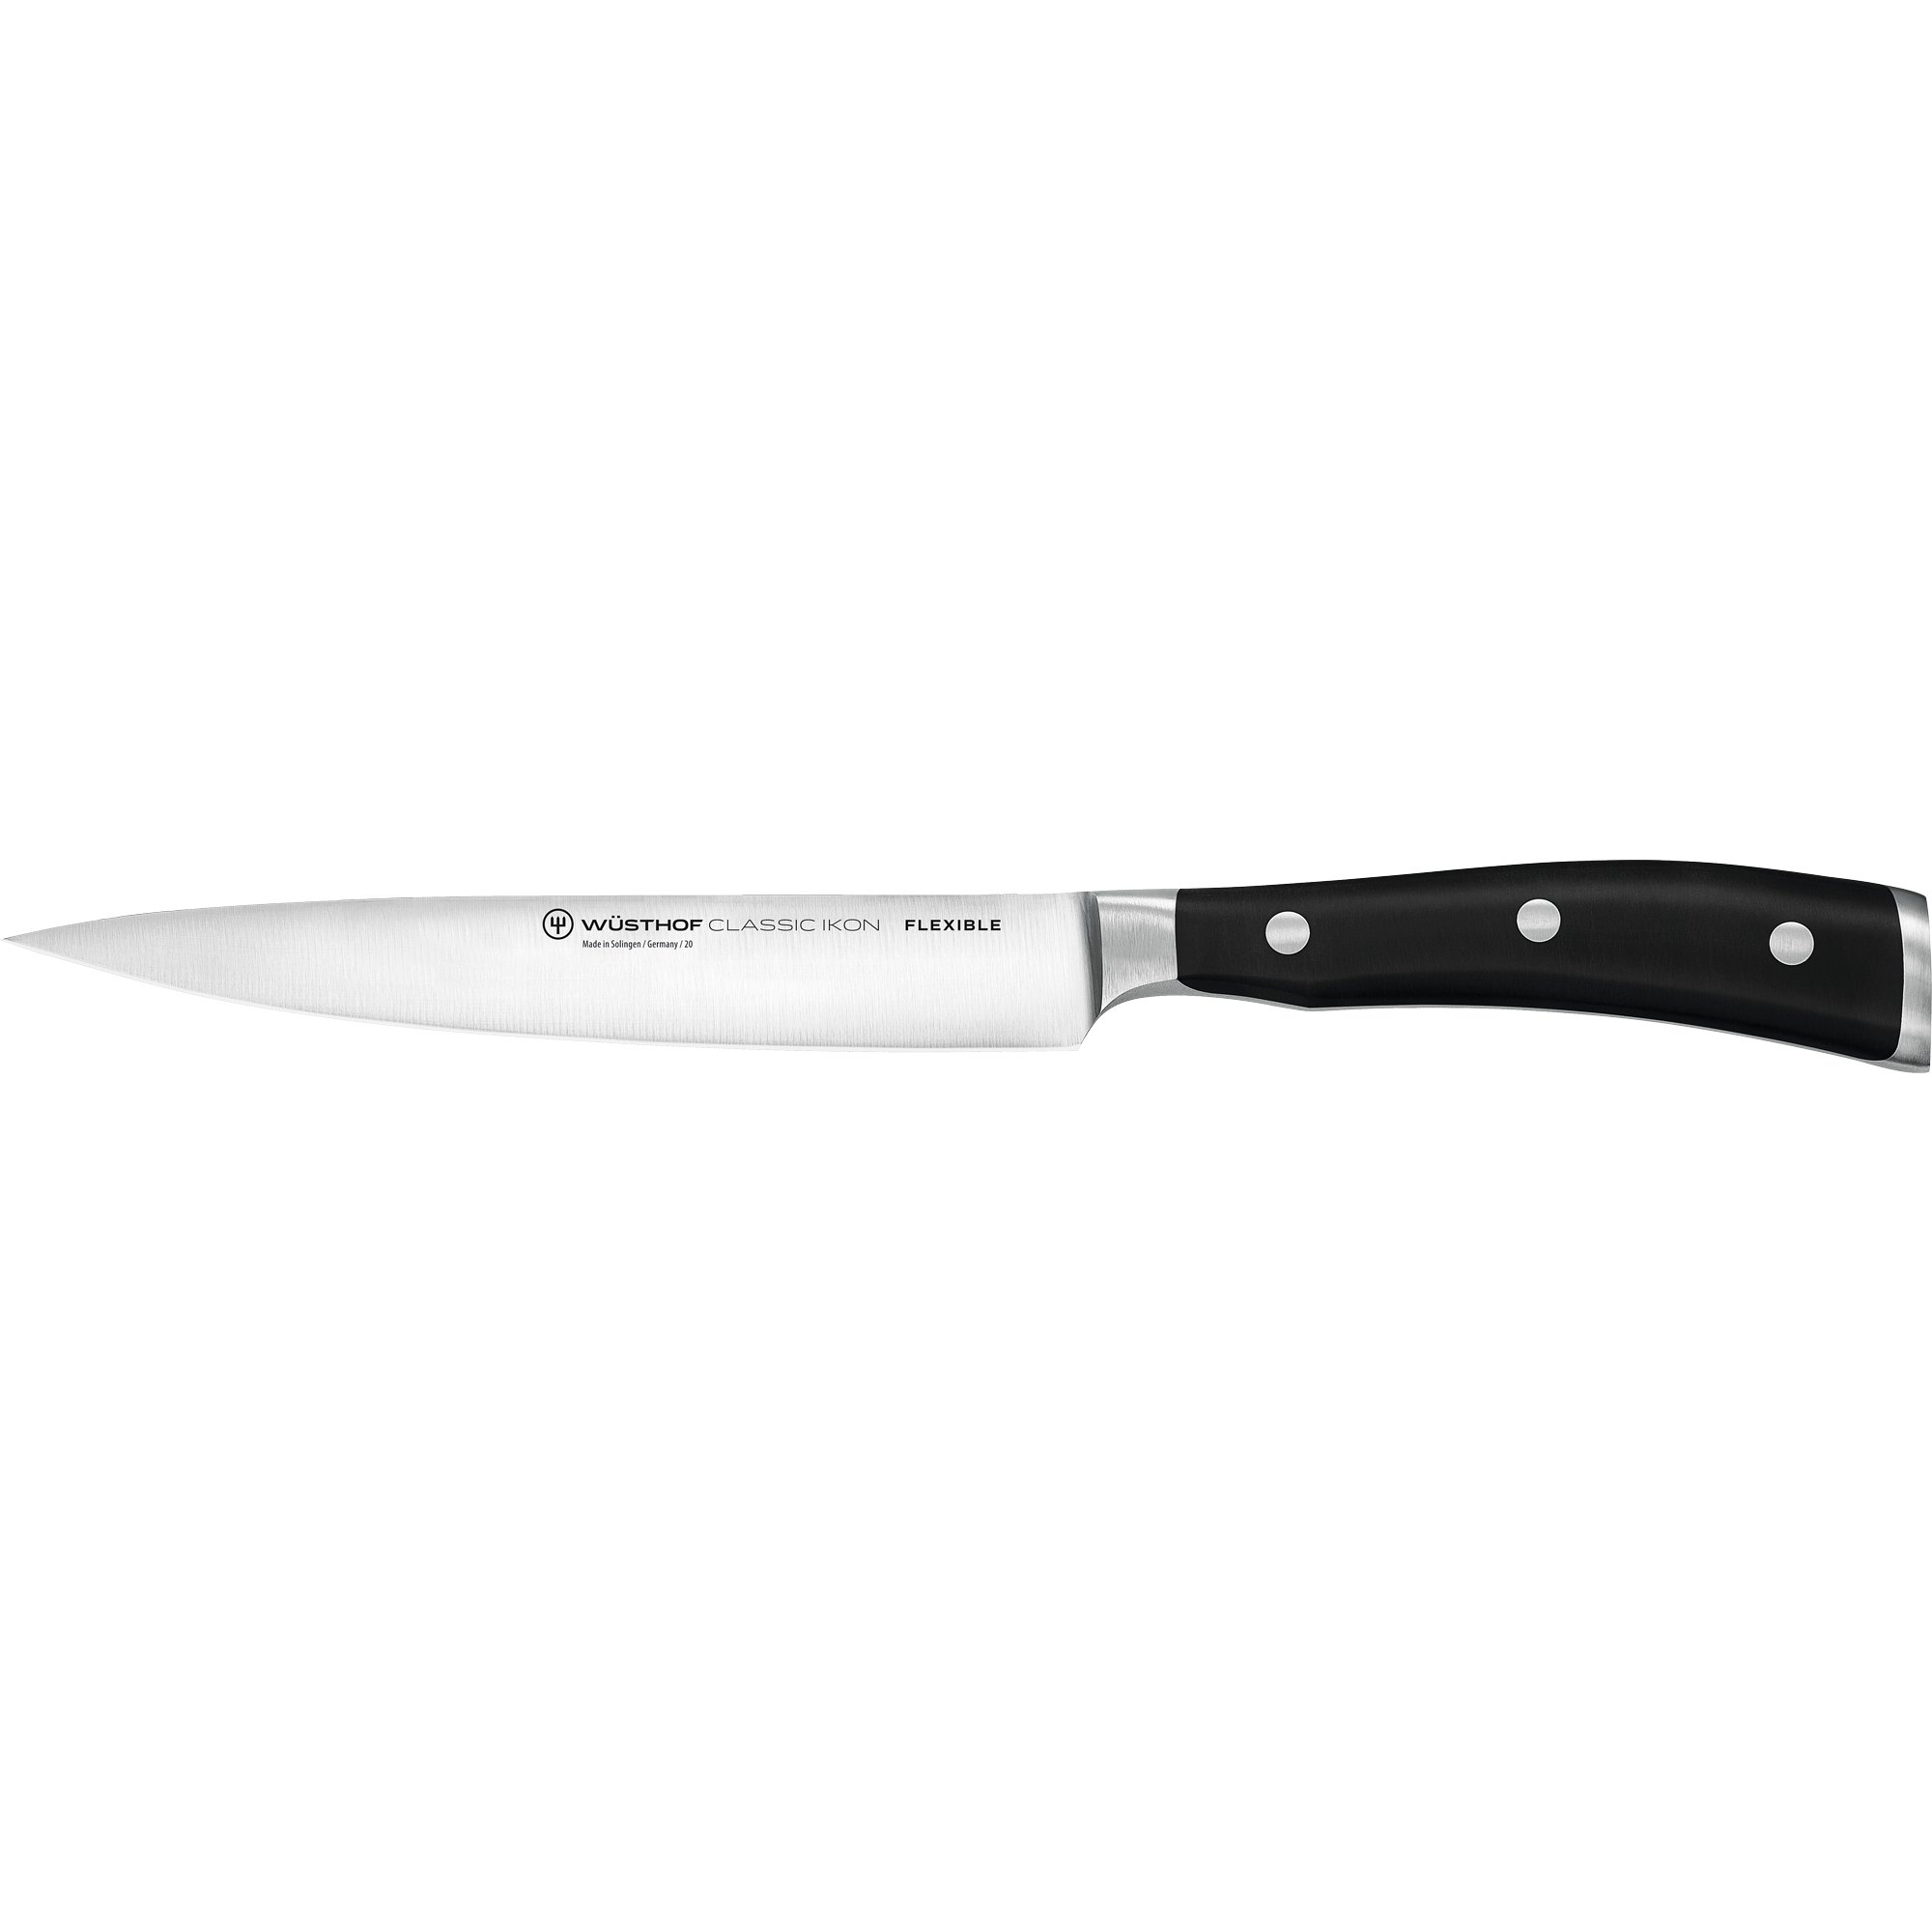 #1 på vores liste over kødkniv er Kødkniv